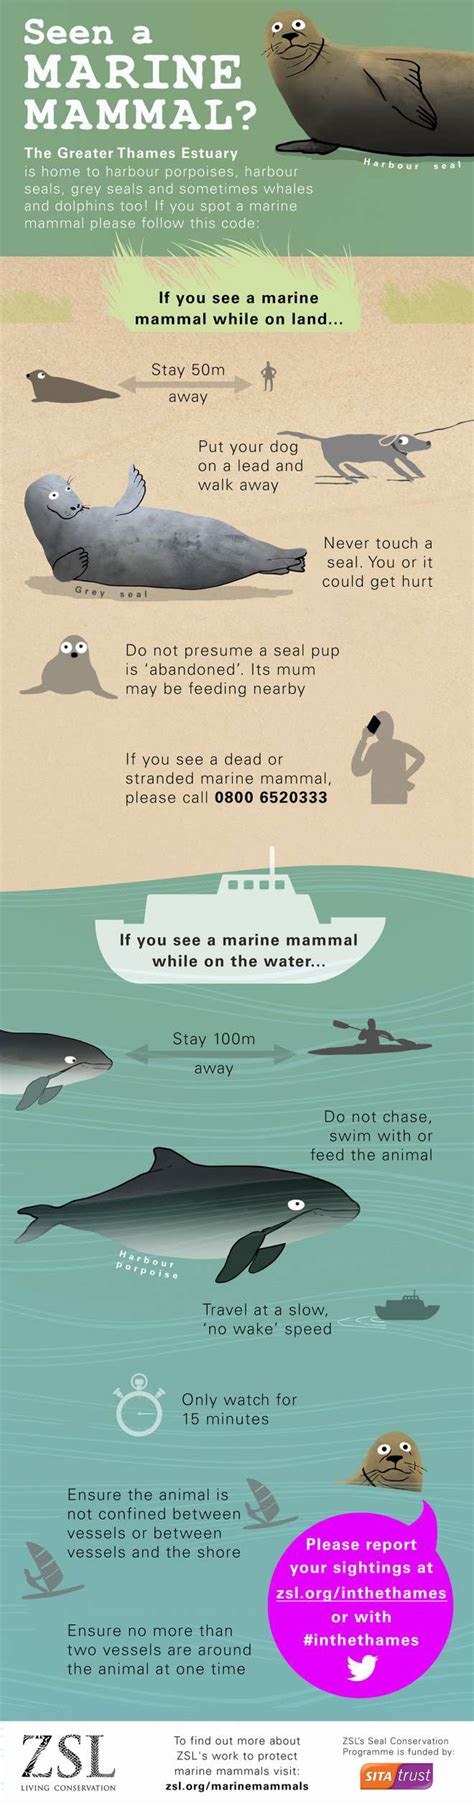 Infographic Marine Mammal Code Of Conduct Marine Mammals Marine